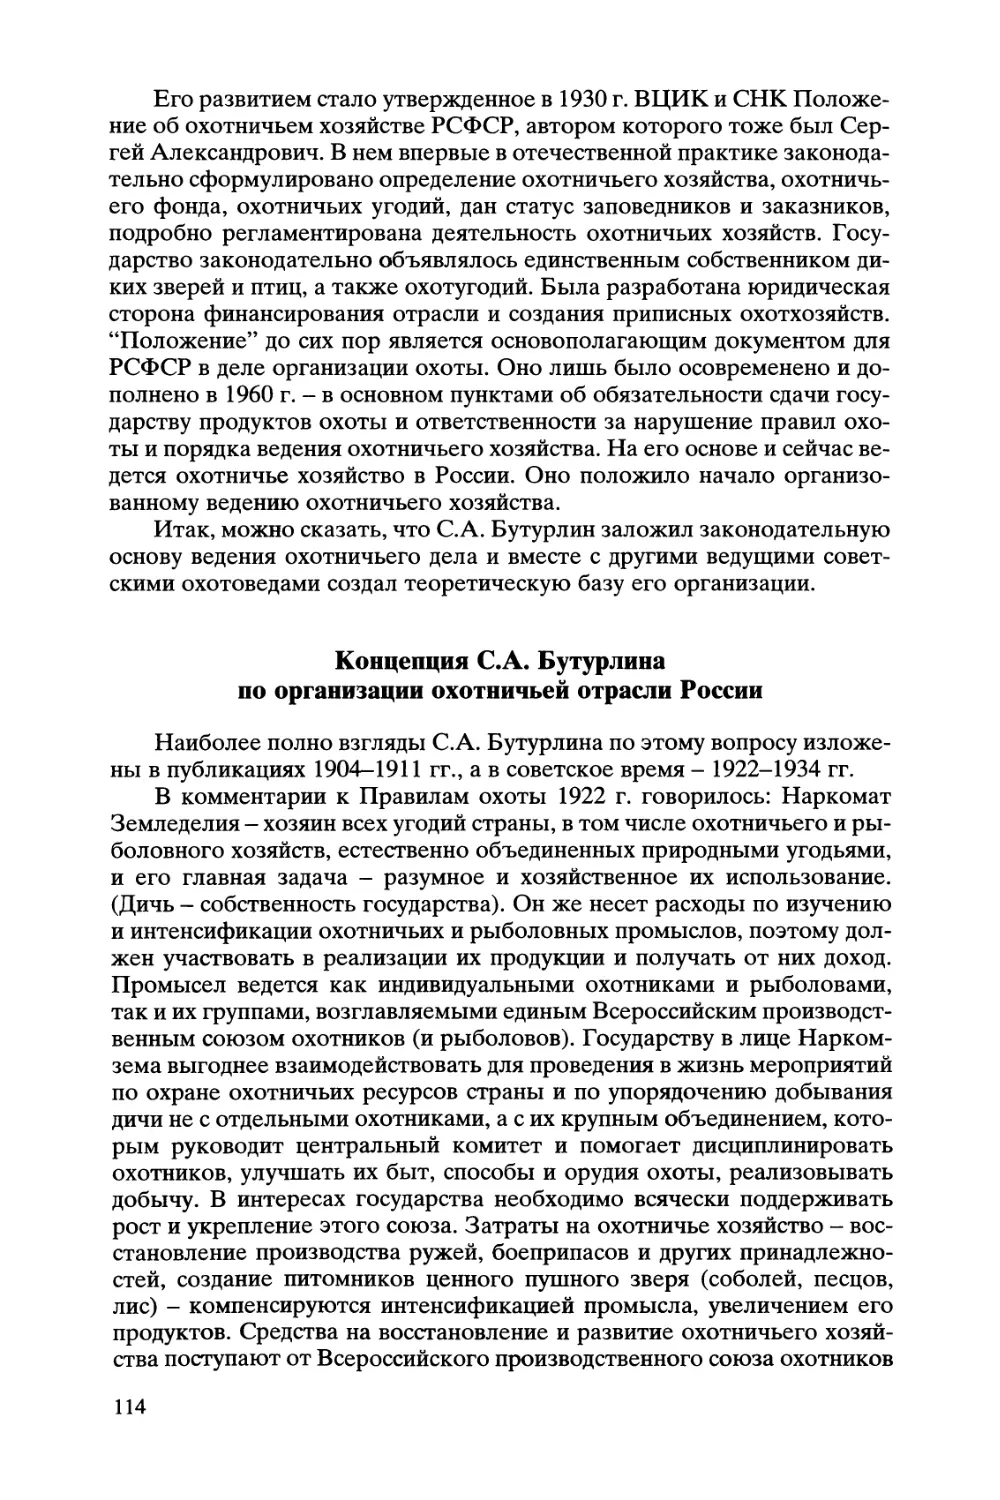 Концепция С.А. Бутурлина по организации охотничьей отрасли России